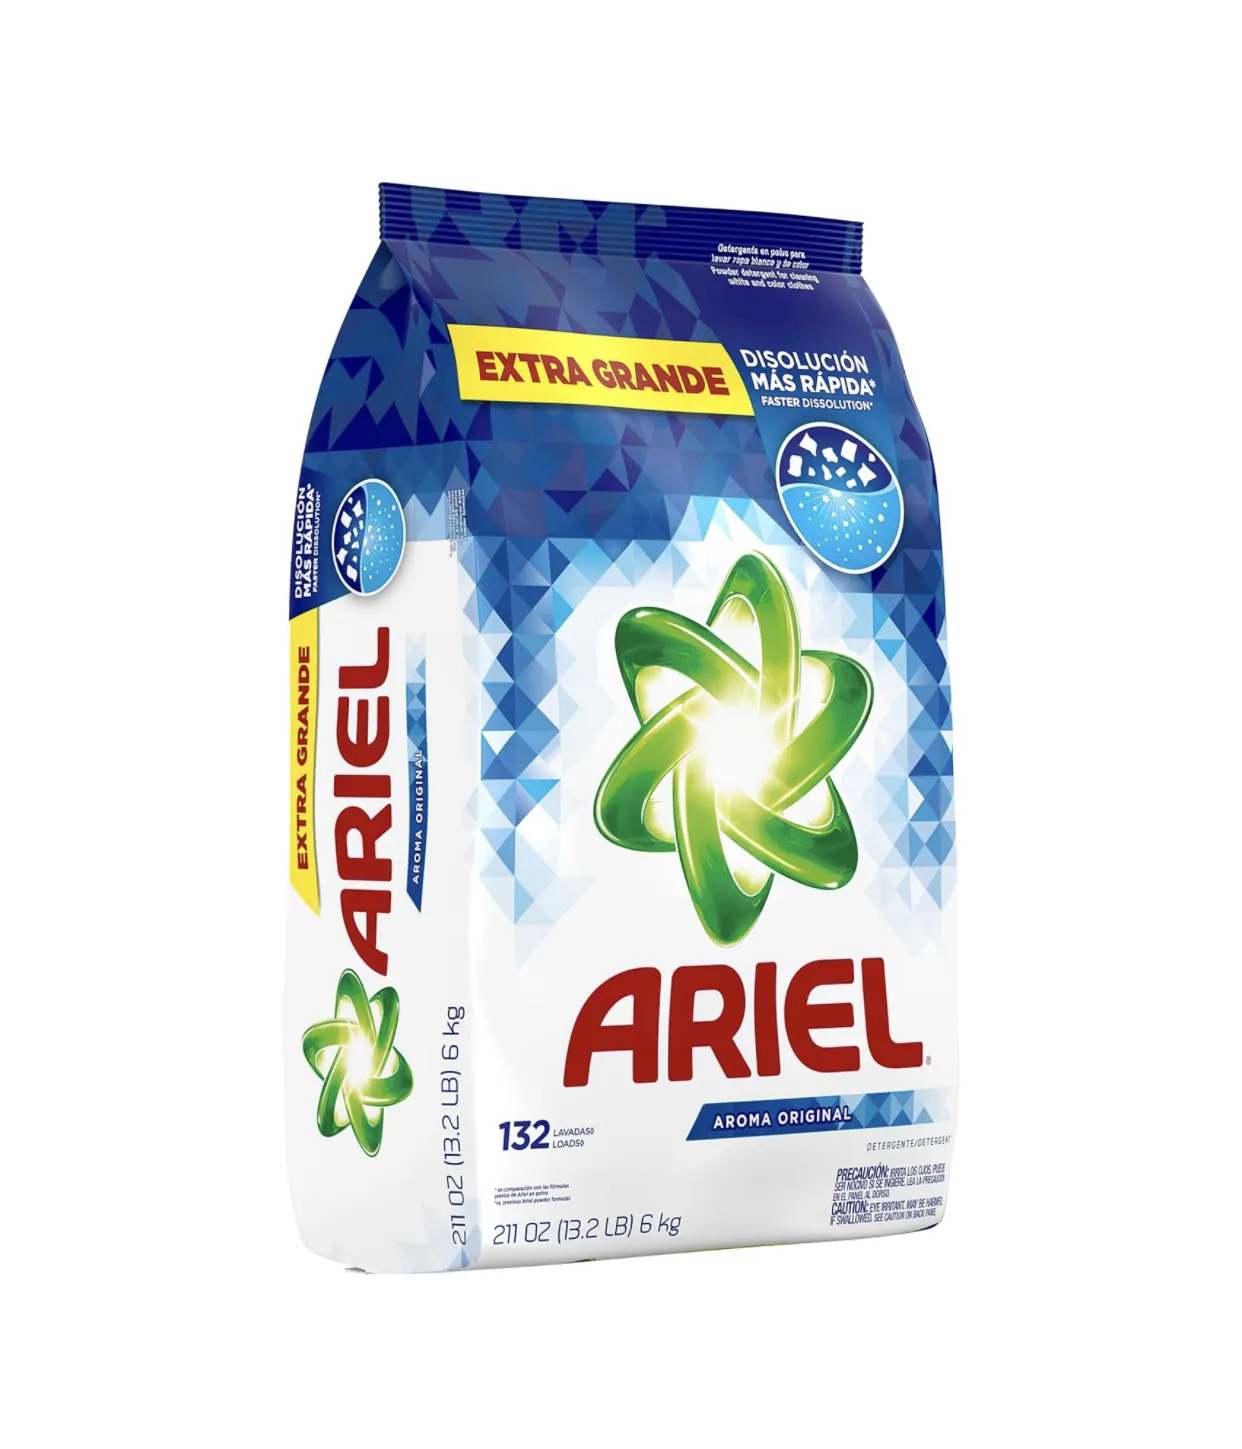 Top Online Pick Ariel Powder Laundry Detergent, High Efficiency Original Scent, 211 ounces 132 Loads, 13.19 Pound 6kg(Pack of 1)